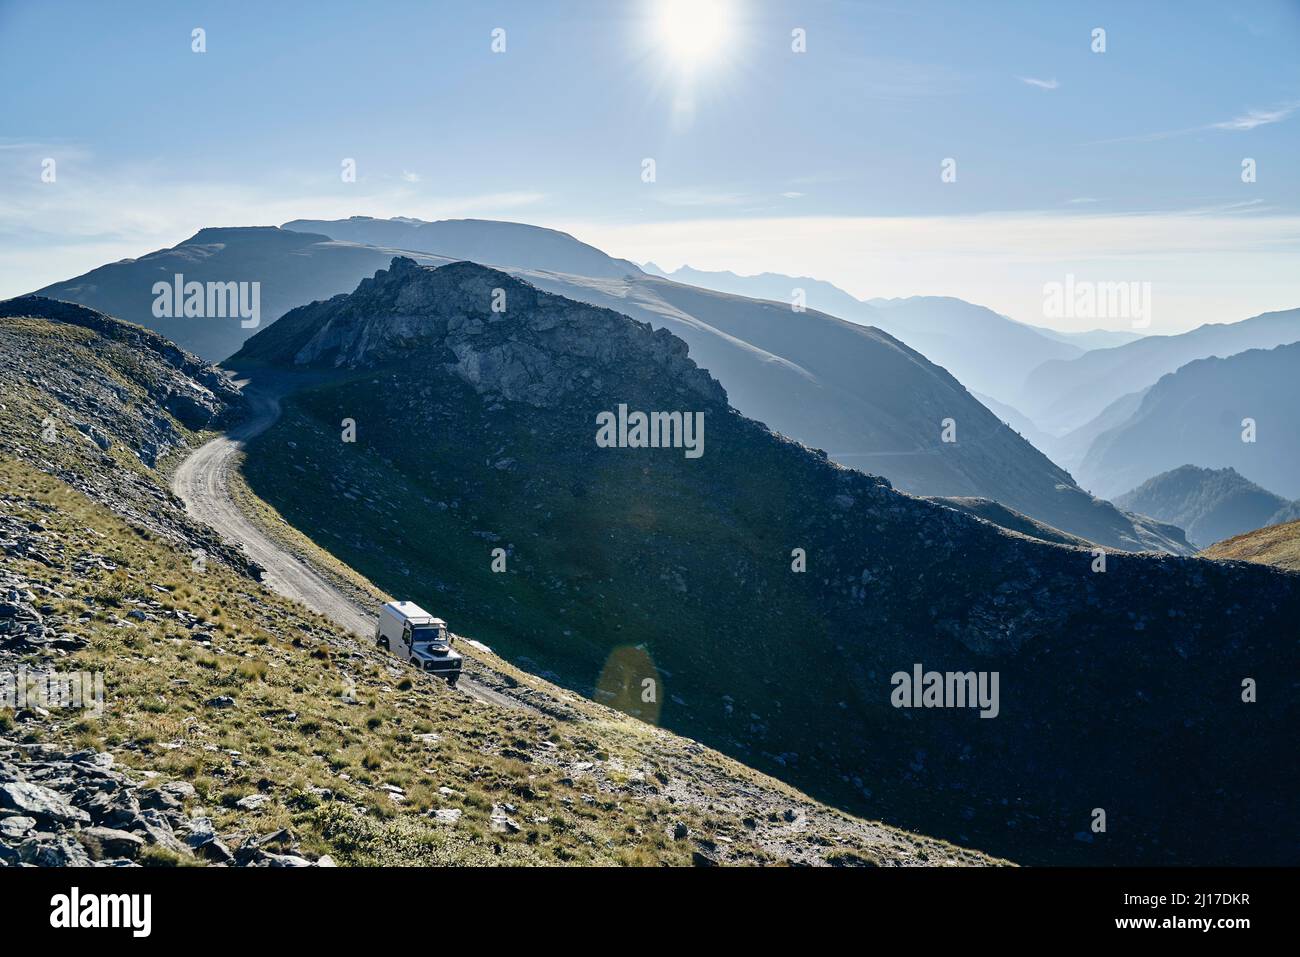 Off-road vehicle on mountain ridge, Colle dell'Assietta, Turin, Italy Stock Photo